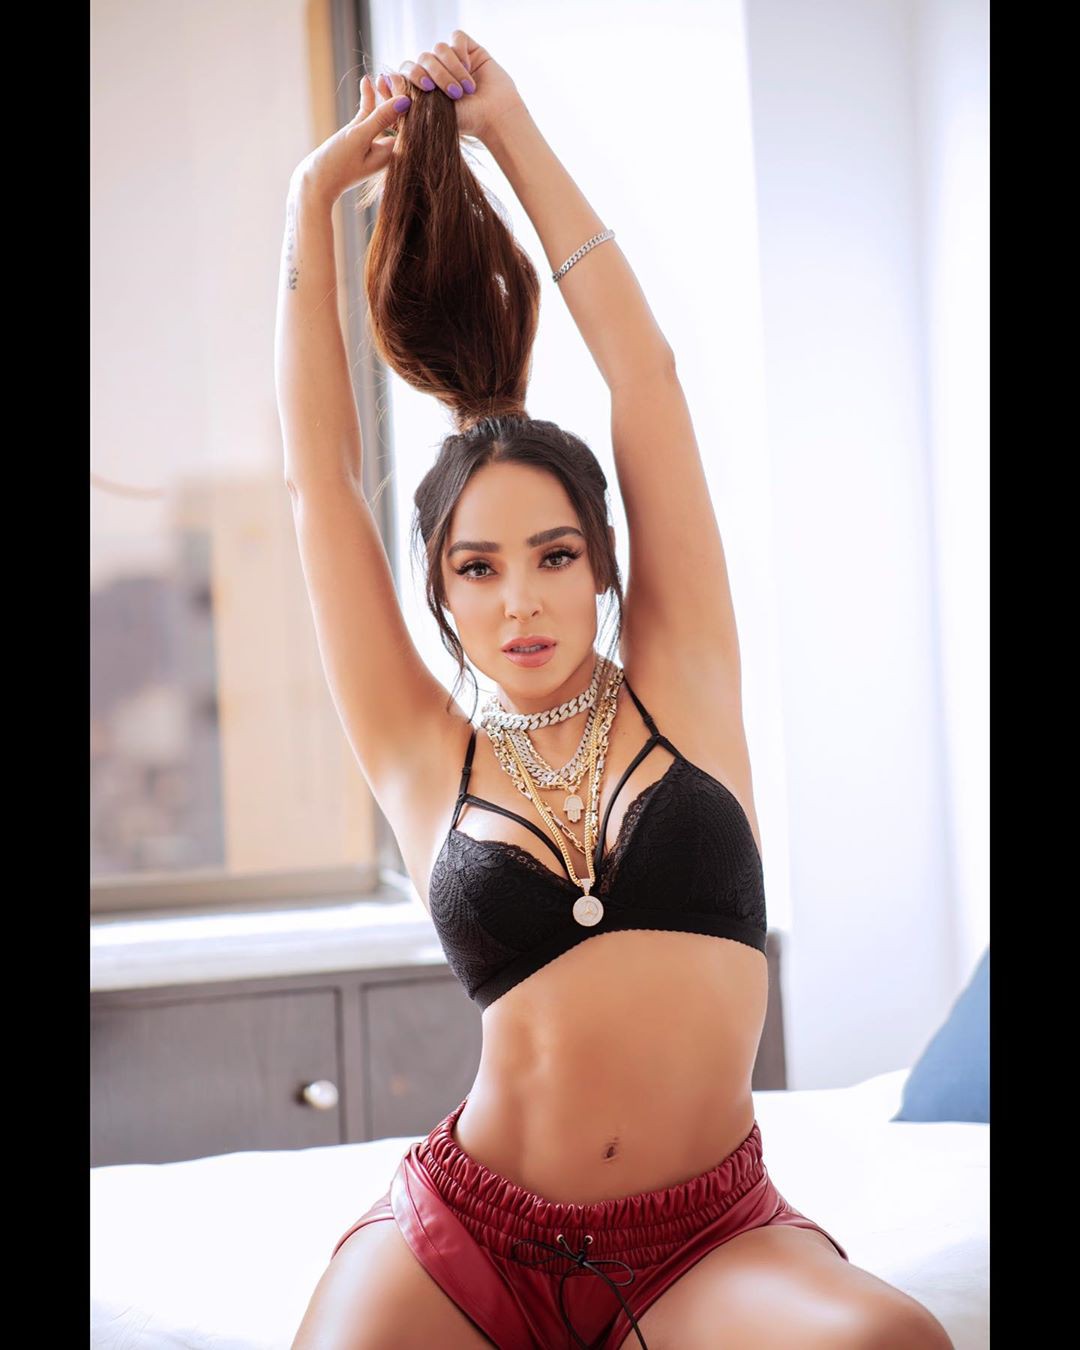 Manelyk Gonzalez lingerie colour combination, hot legs, hot legs picture: Lingerie,  Instagram girls,  Undergarment  